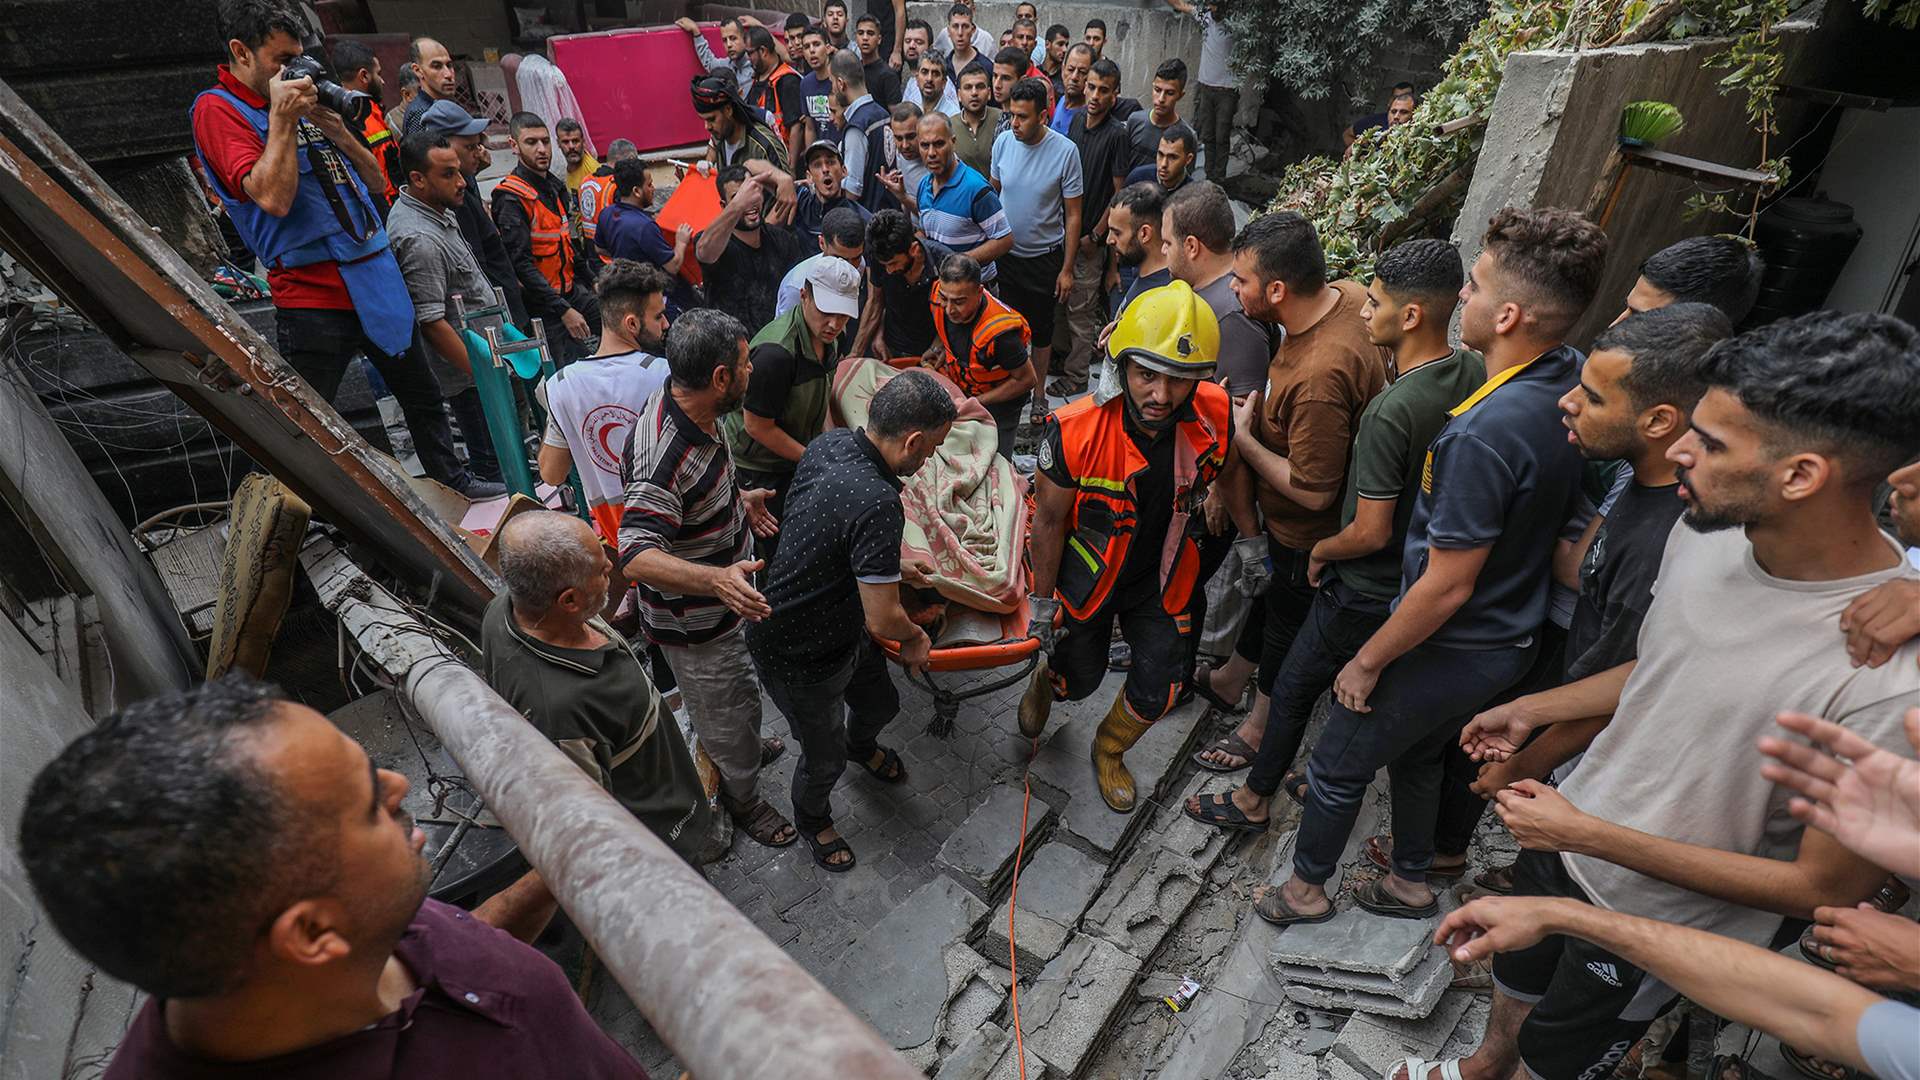 Al Jazeera: Gaza death toll rises to 4,385